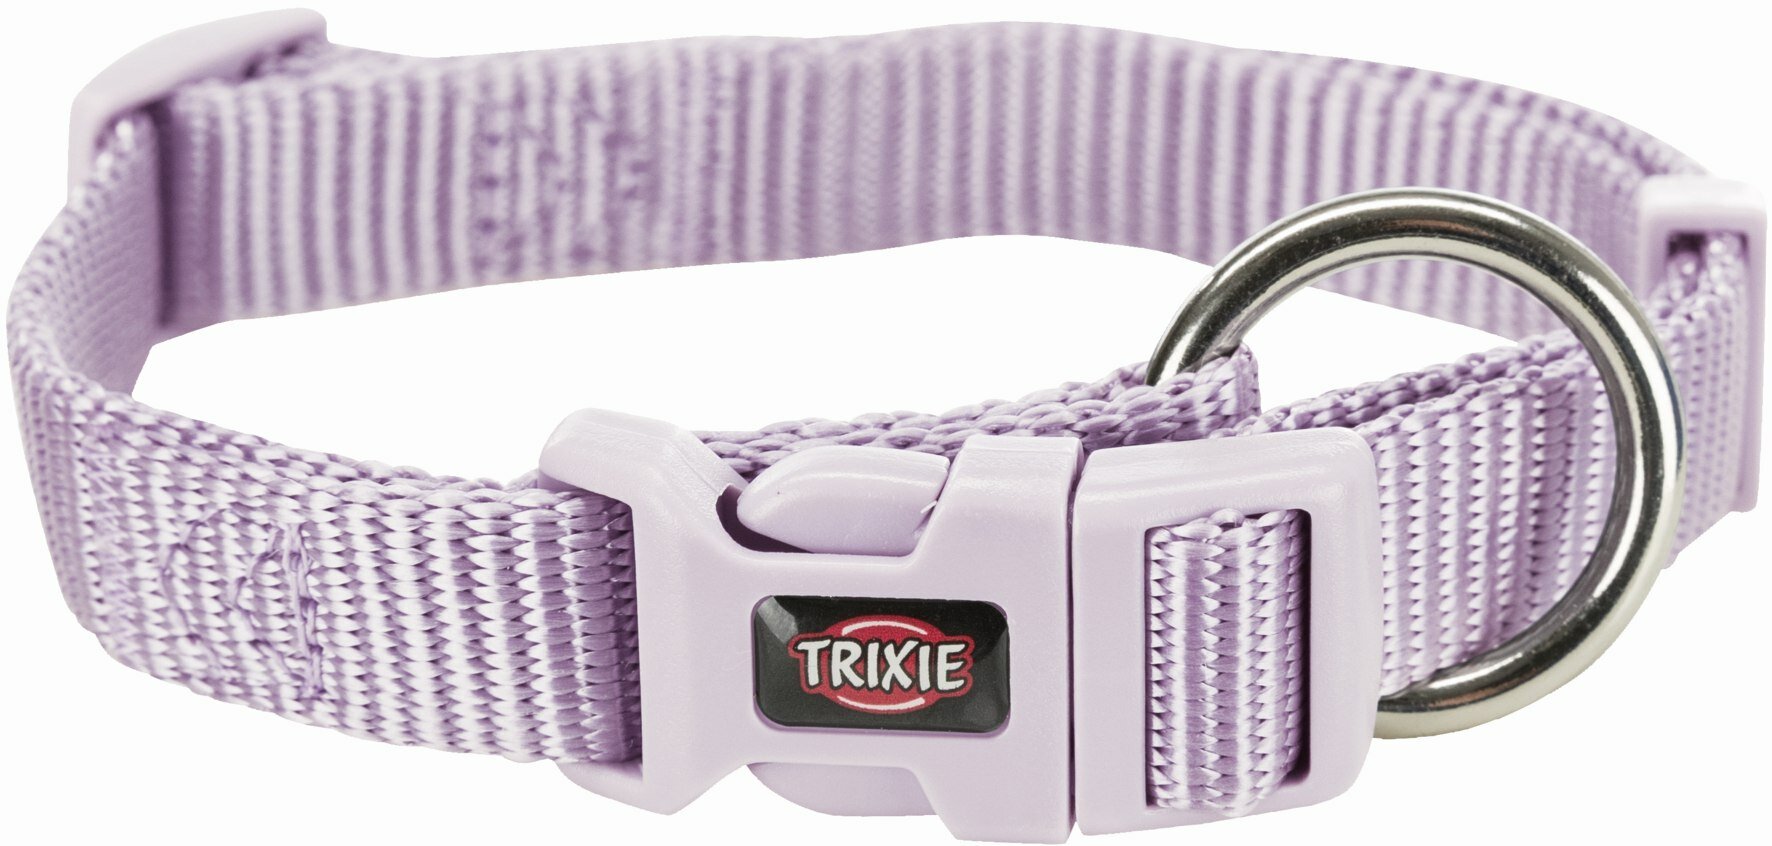 Ошейник TRIXIE Premium, XS-S, 22-35 см,10 мм, светло-сиреневый